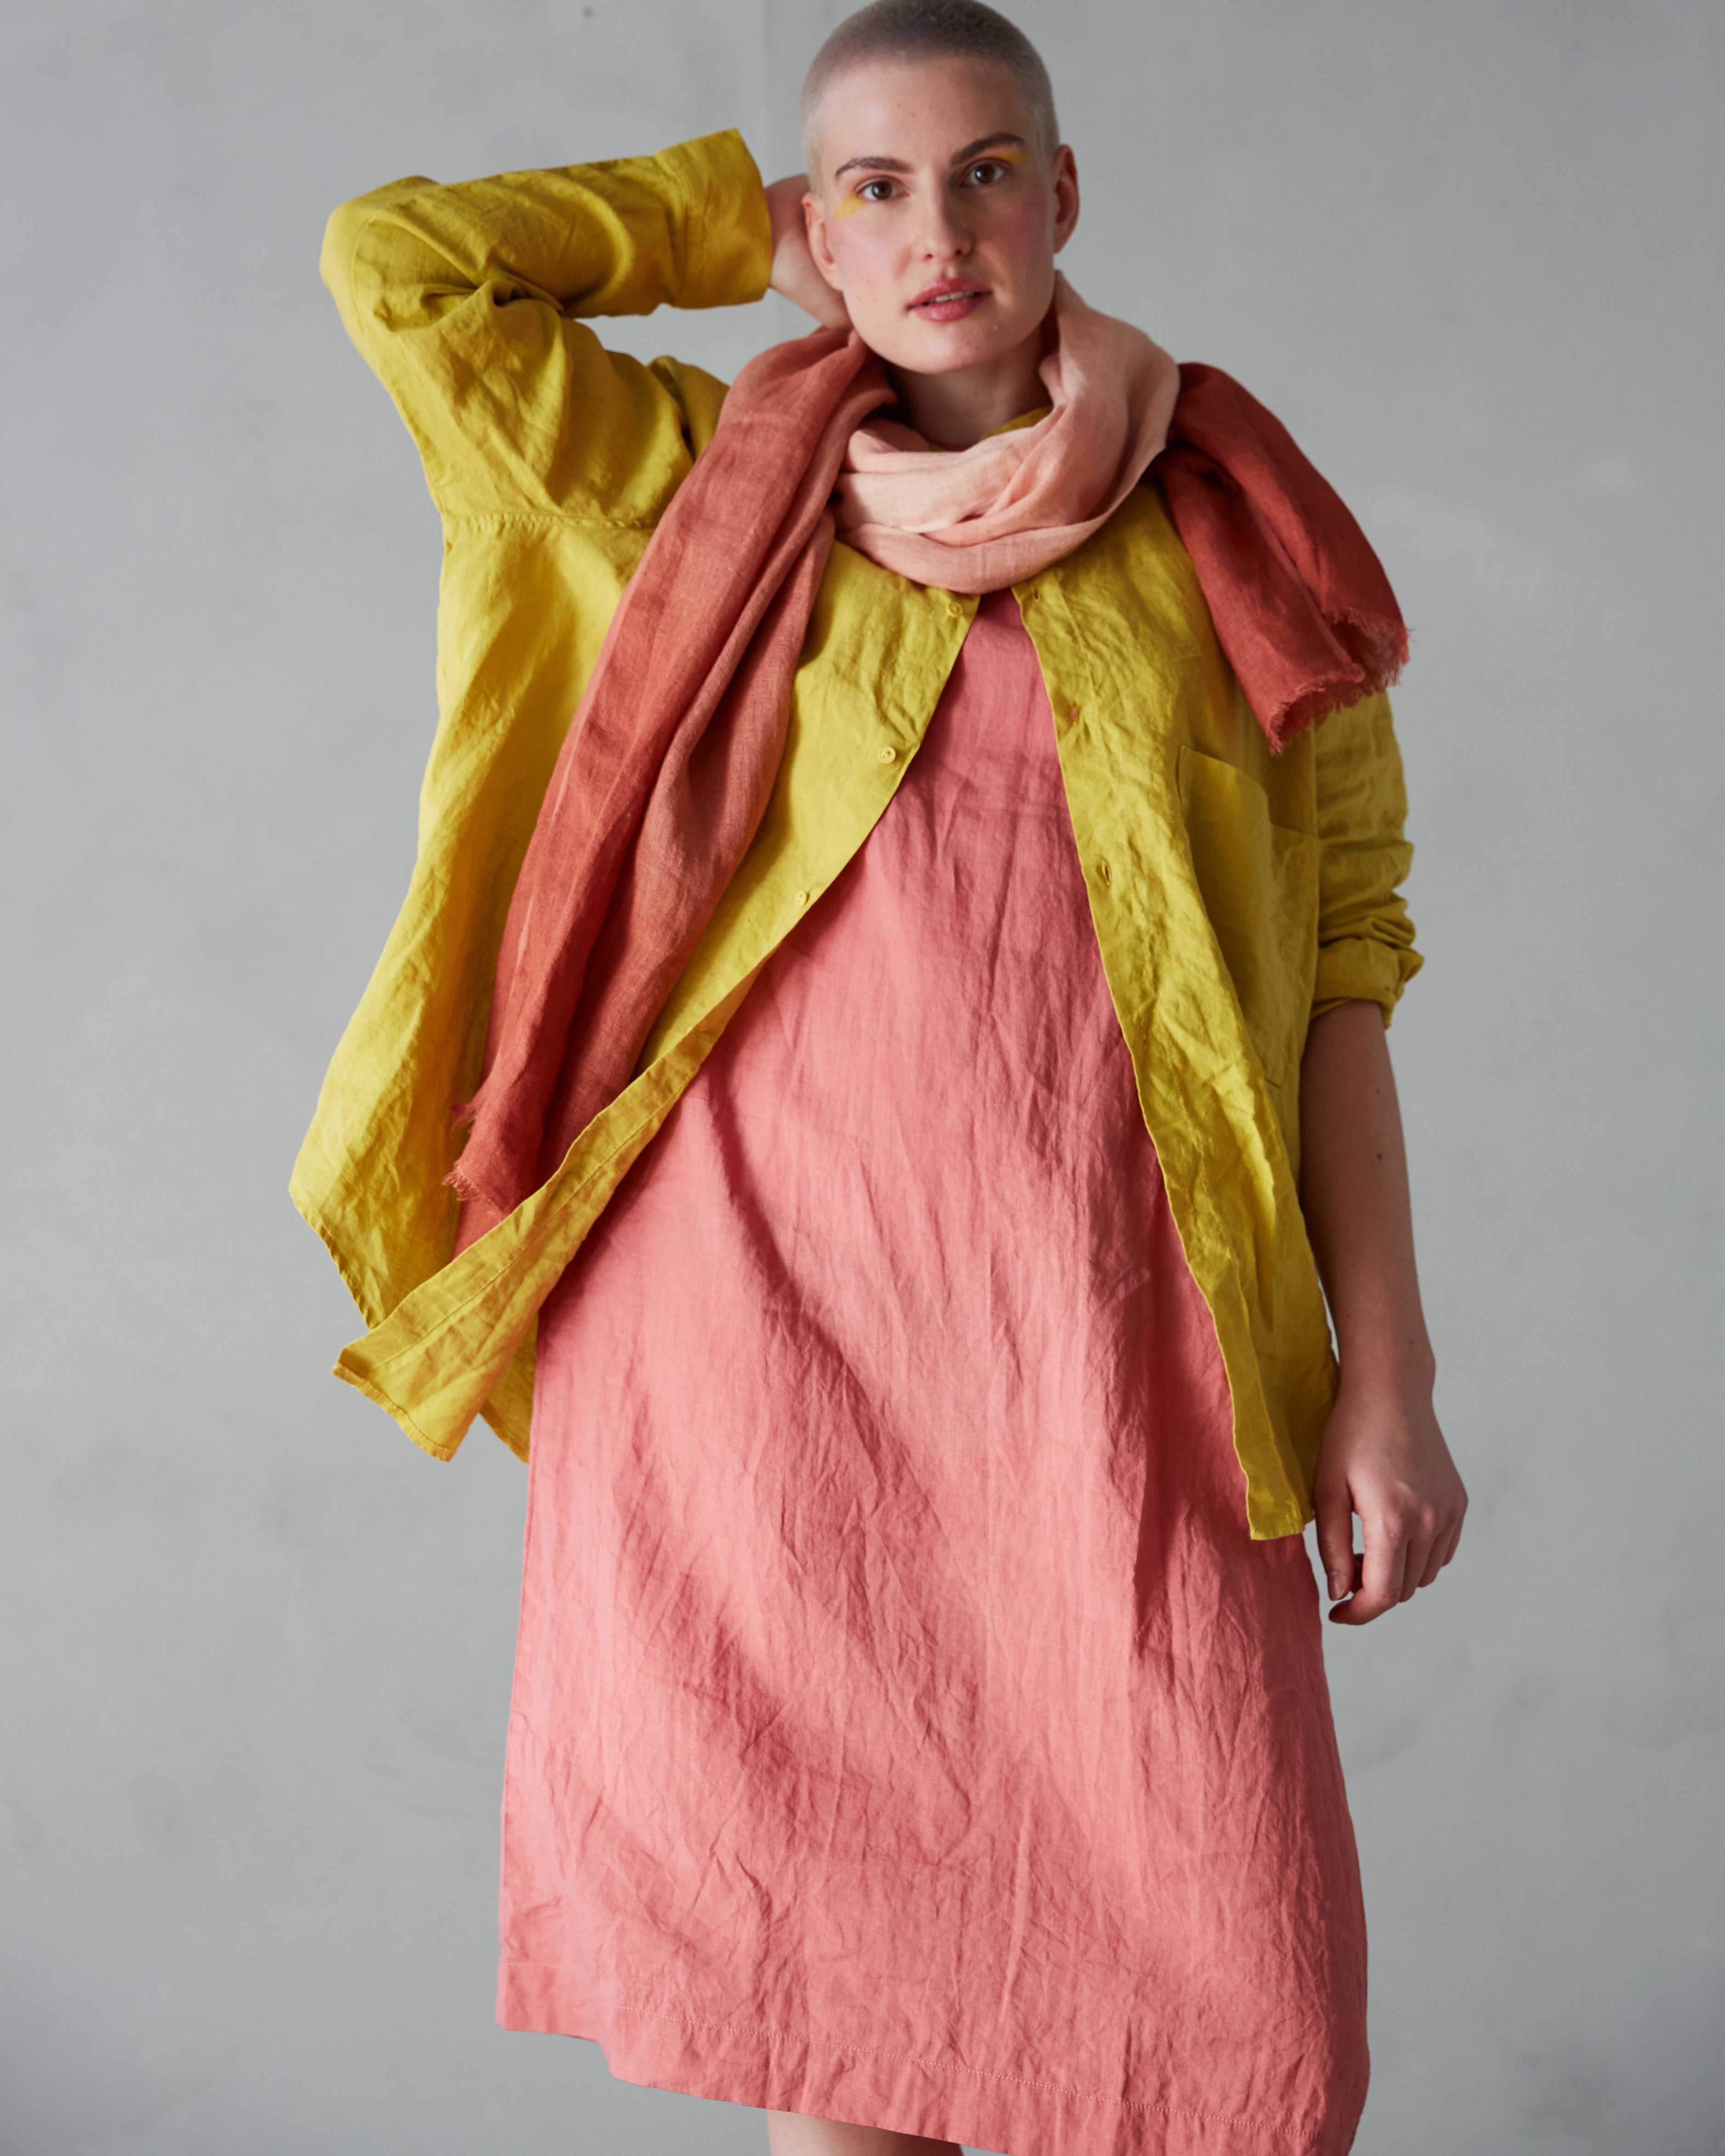 Rymlig murarskjorta i härligt linne (unisex) – gul